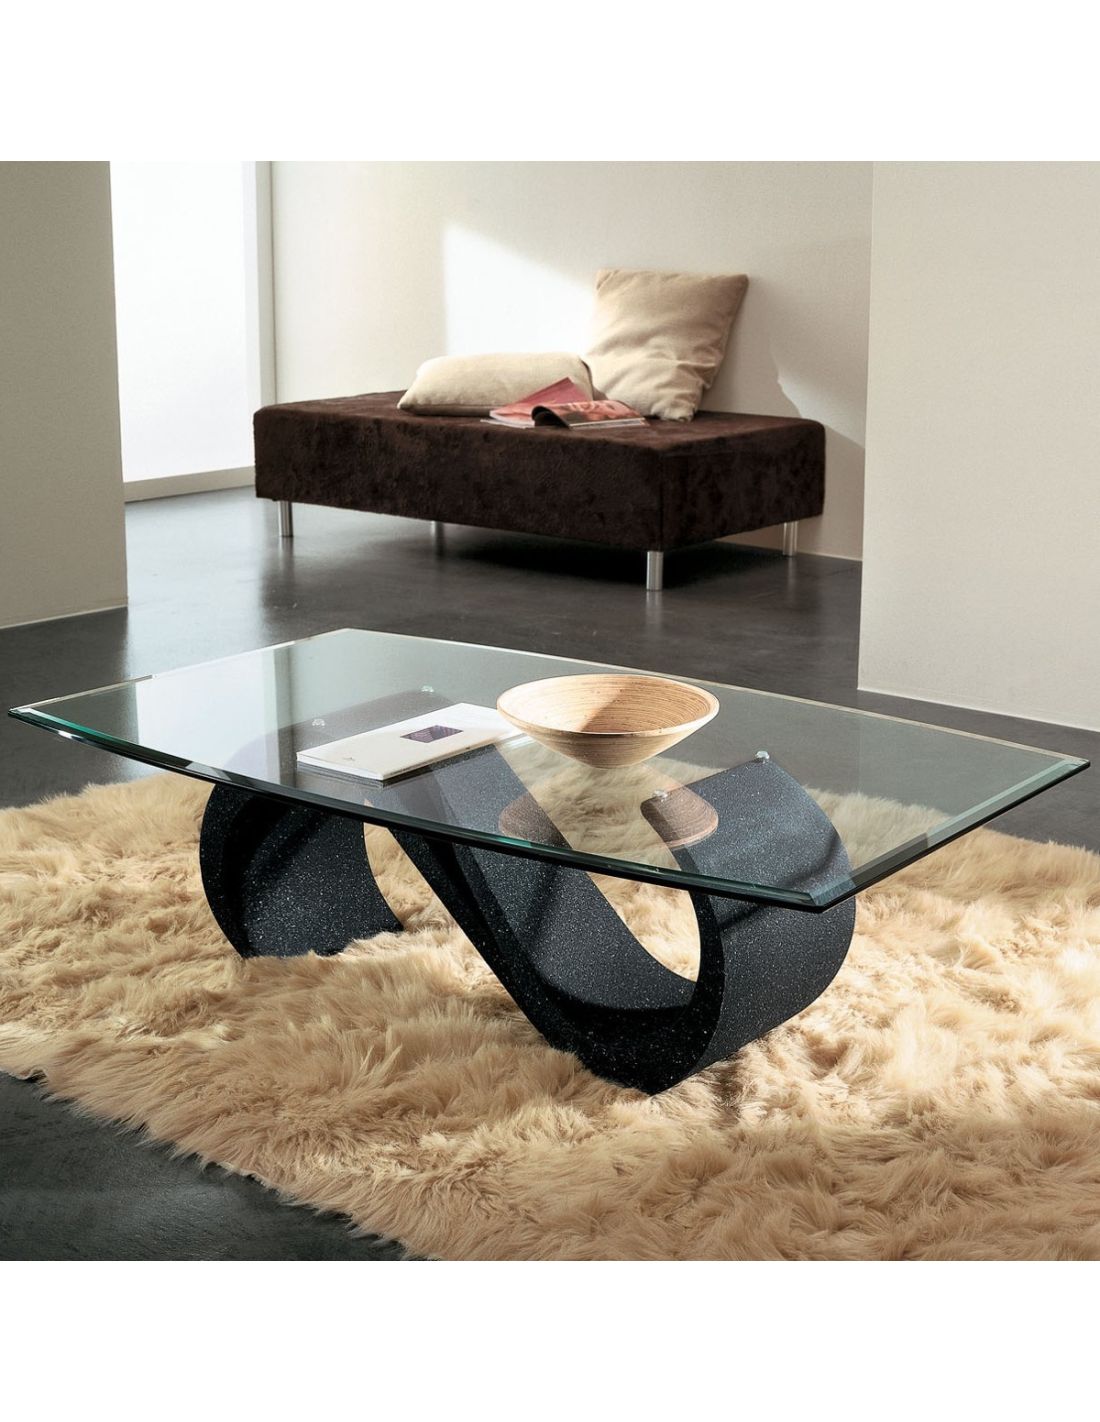 Tavolino salotto in vetro moderno ovale 120 x 70 cm runi for Tavolini da salotto moderni mondo convenienza